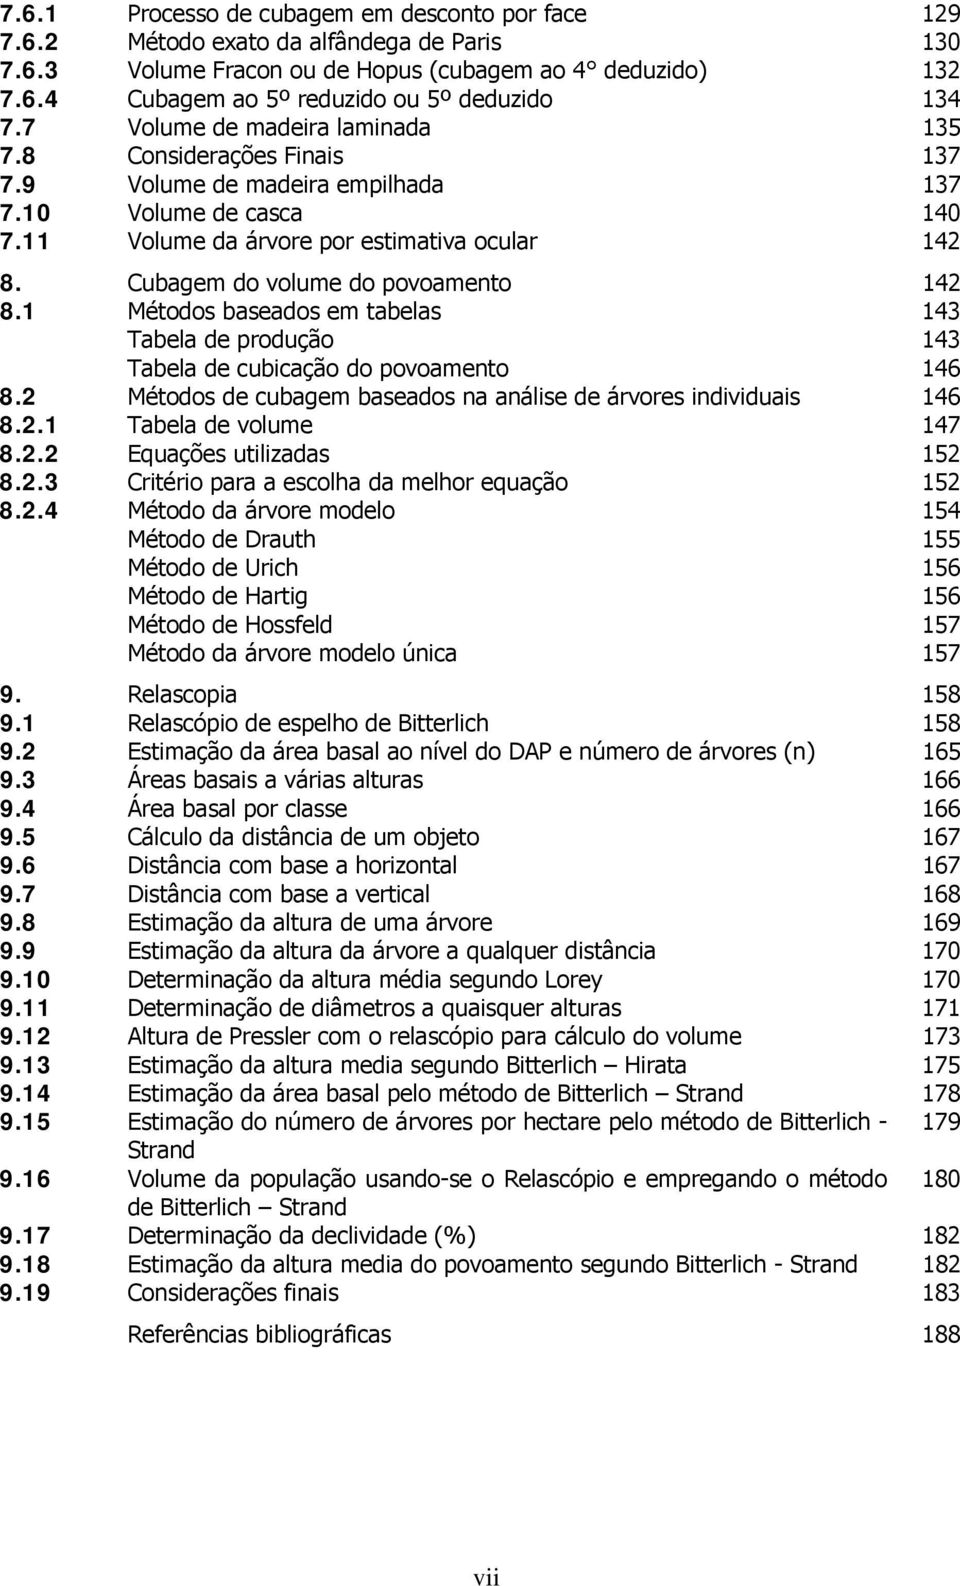 Cubagem do volume do povoamento 14 8.1 Métodos baseados em tabelas Tabela de produção Tabela de cubicação do povoamento 143 143 146 8.